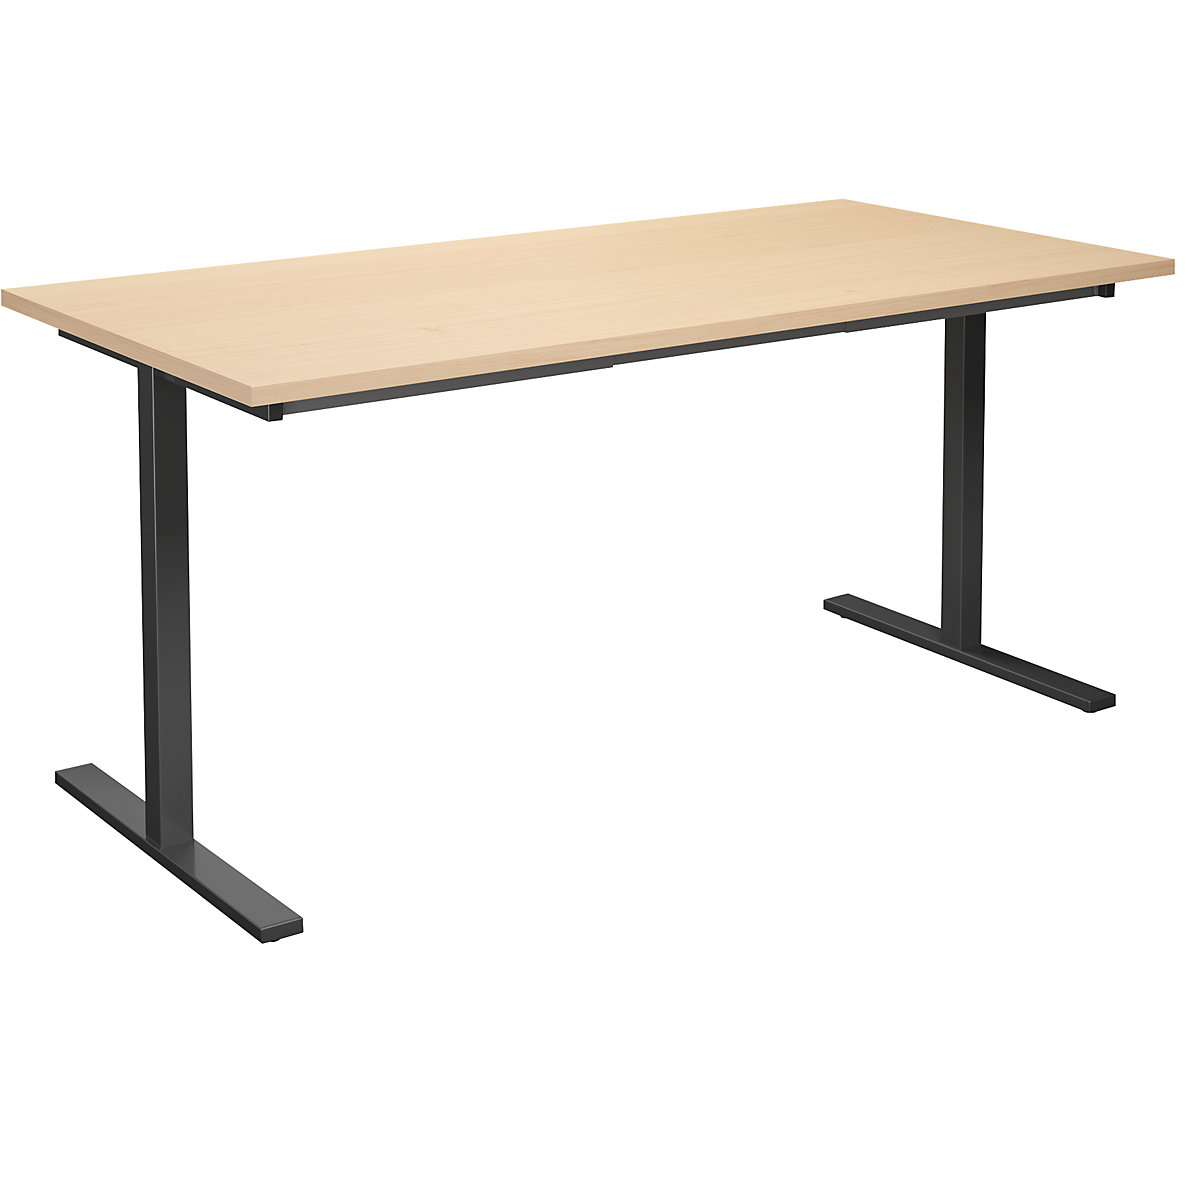 DUO-T multi-purpose desk, straight tabletop, WxD 1600 x 800 mm, birch, black-16